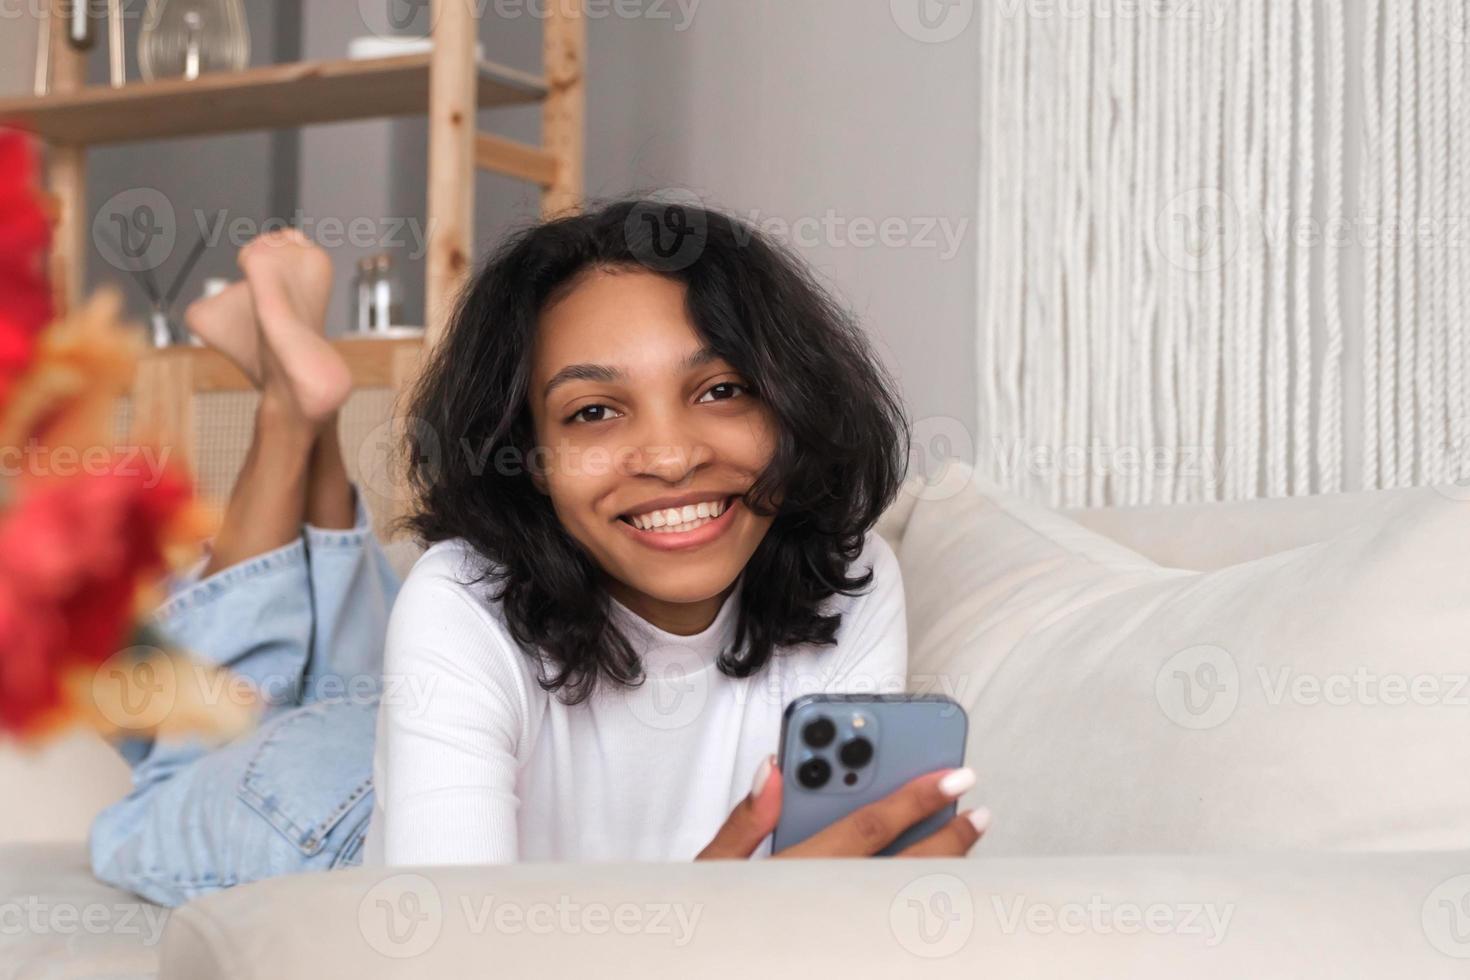 tondu de face vue portrait de content africain américain femme en utilisant téléphone intelligent fot SMS, livraison, en ligne sortir ensemble photo